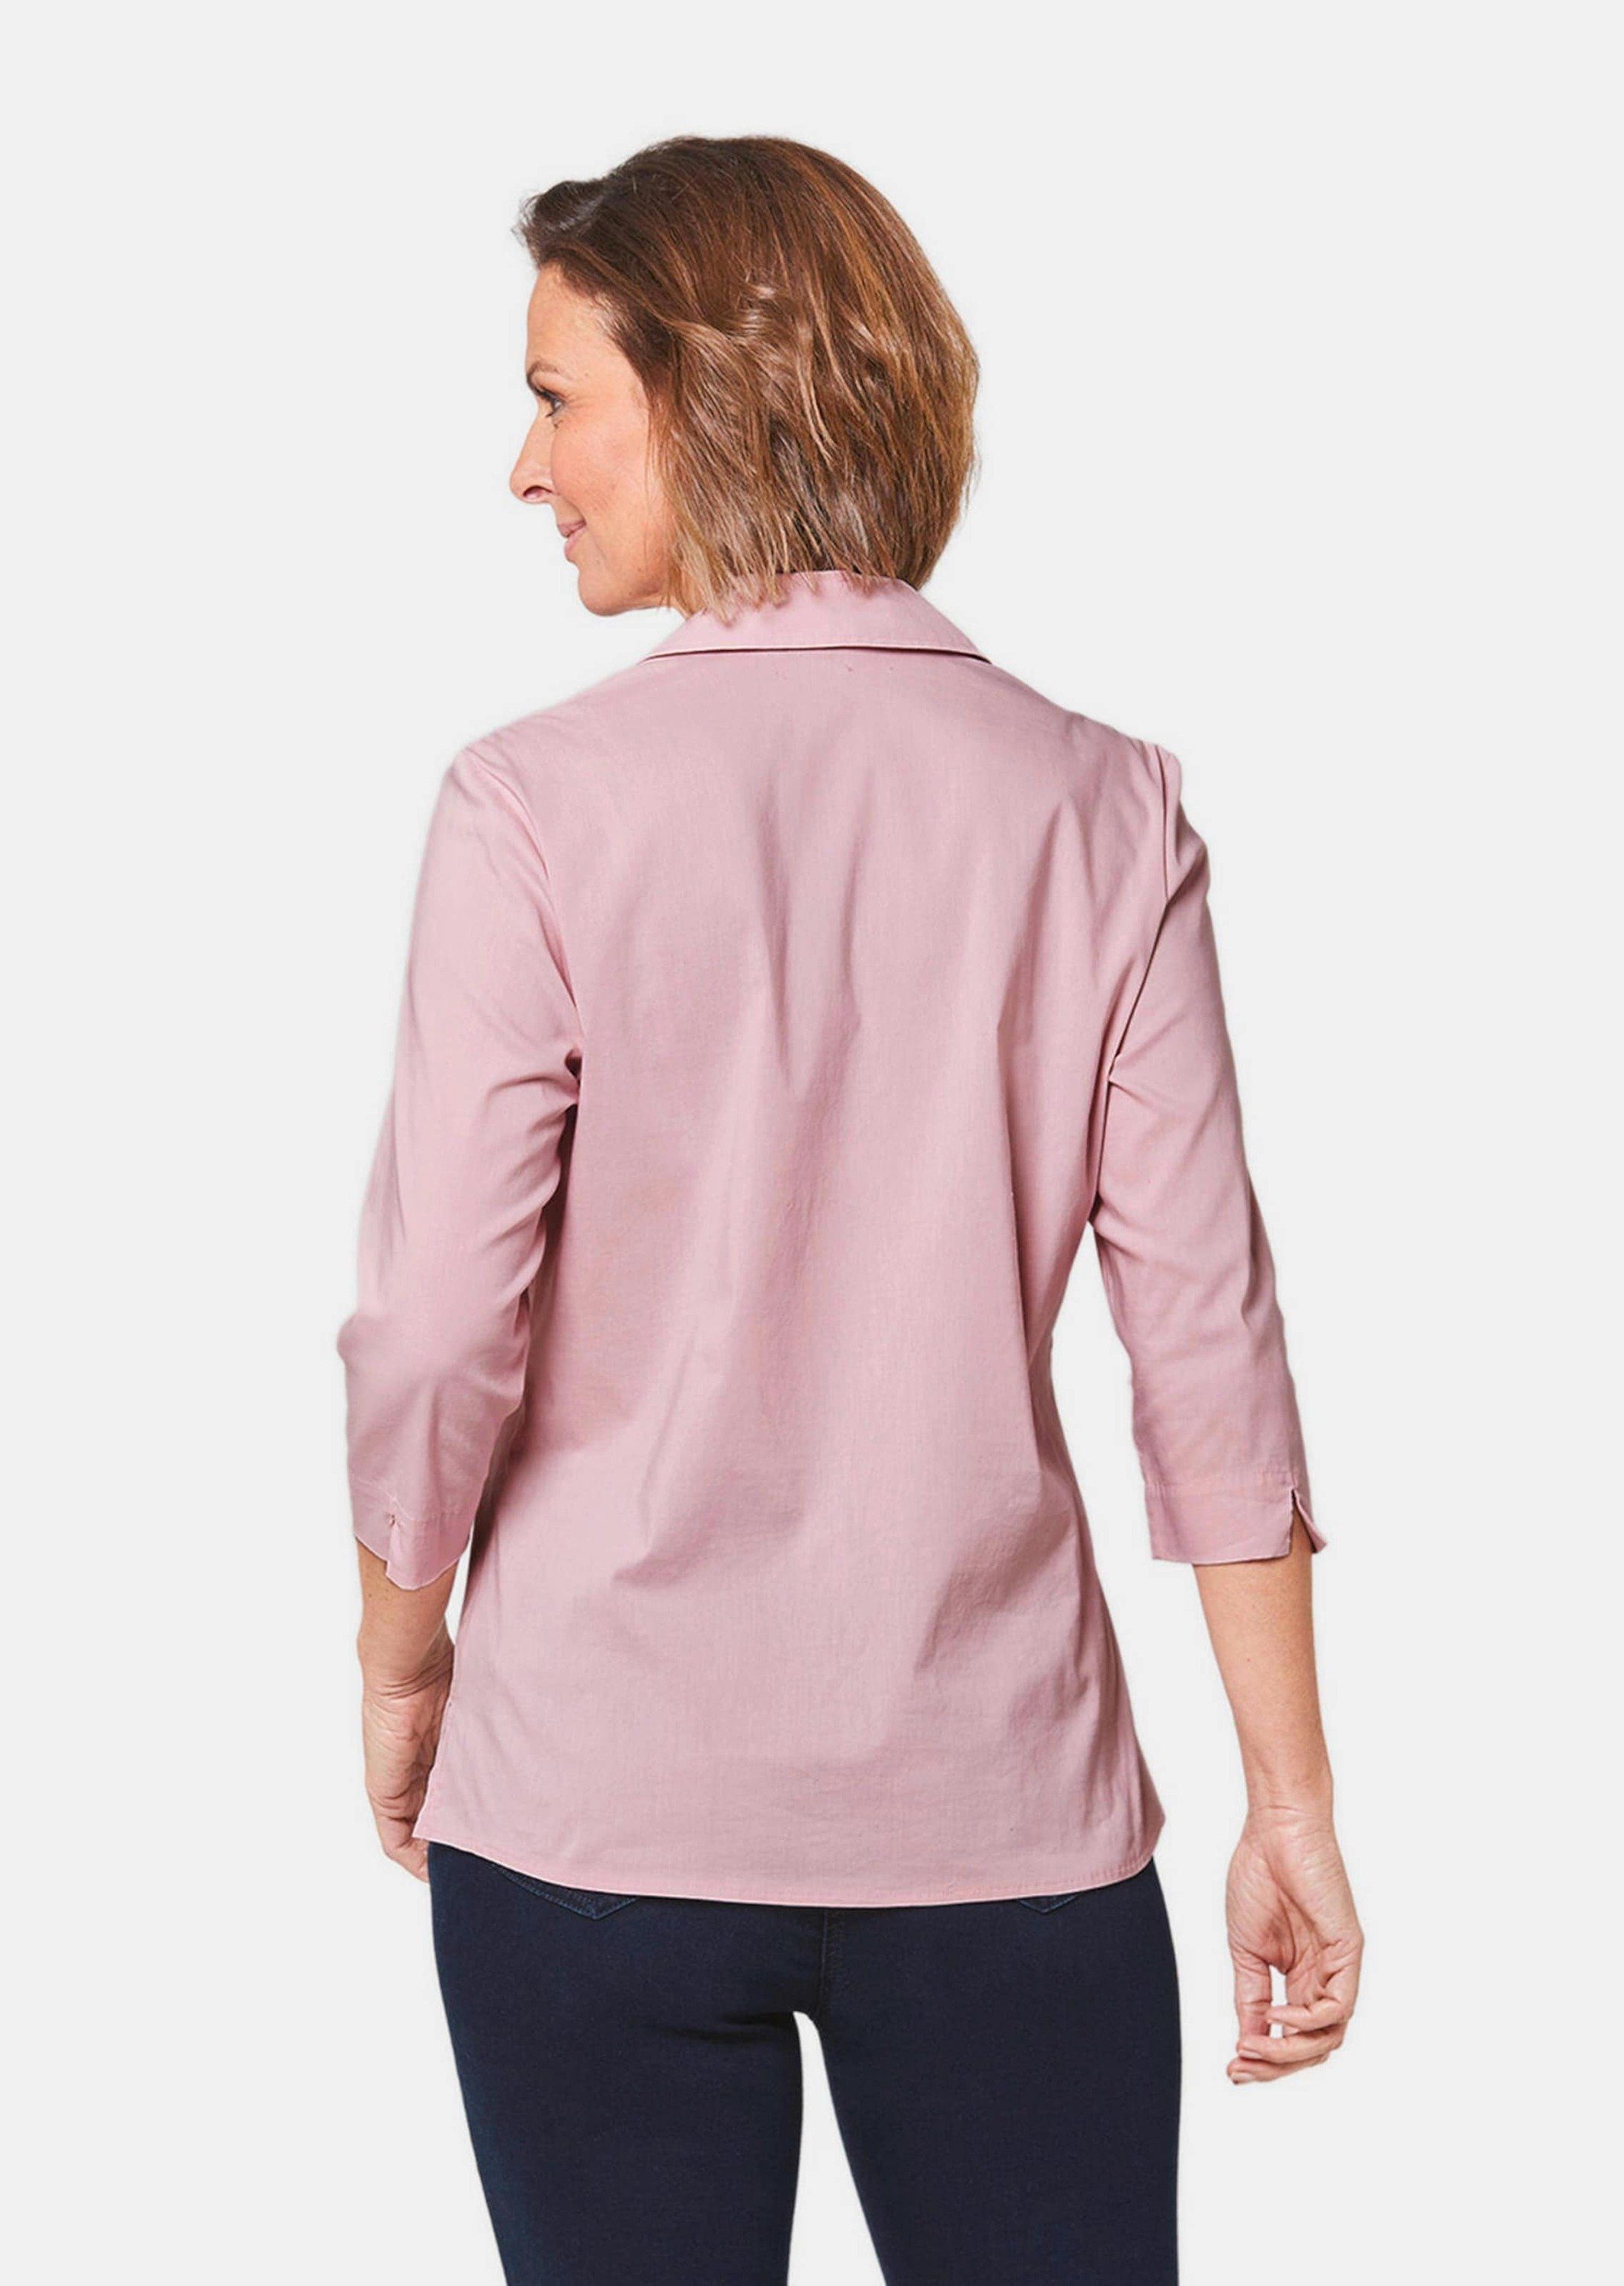 Hemdbluse rosé mit Baumwolle Stretchbequeme GOLDNER Bluse